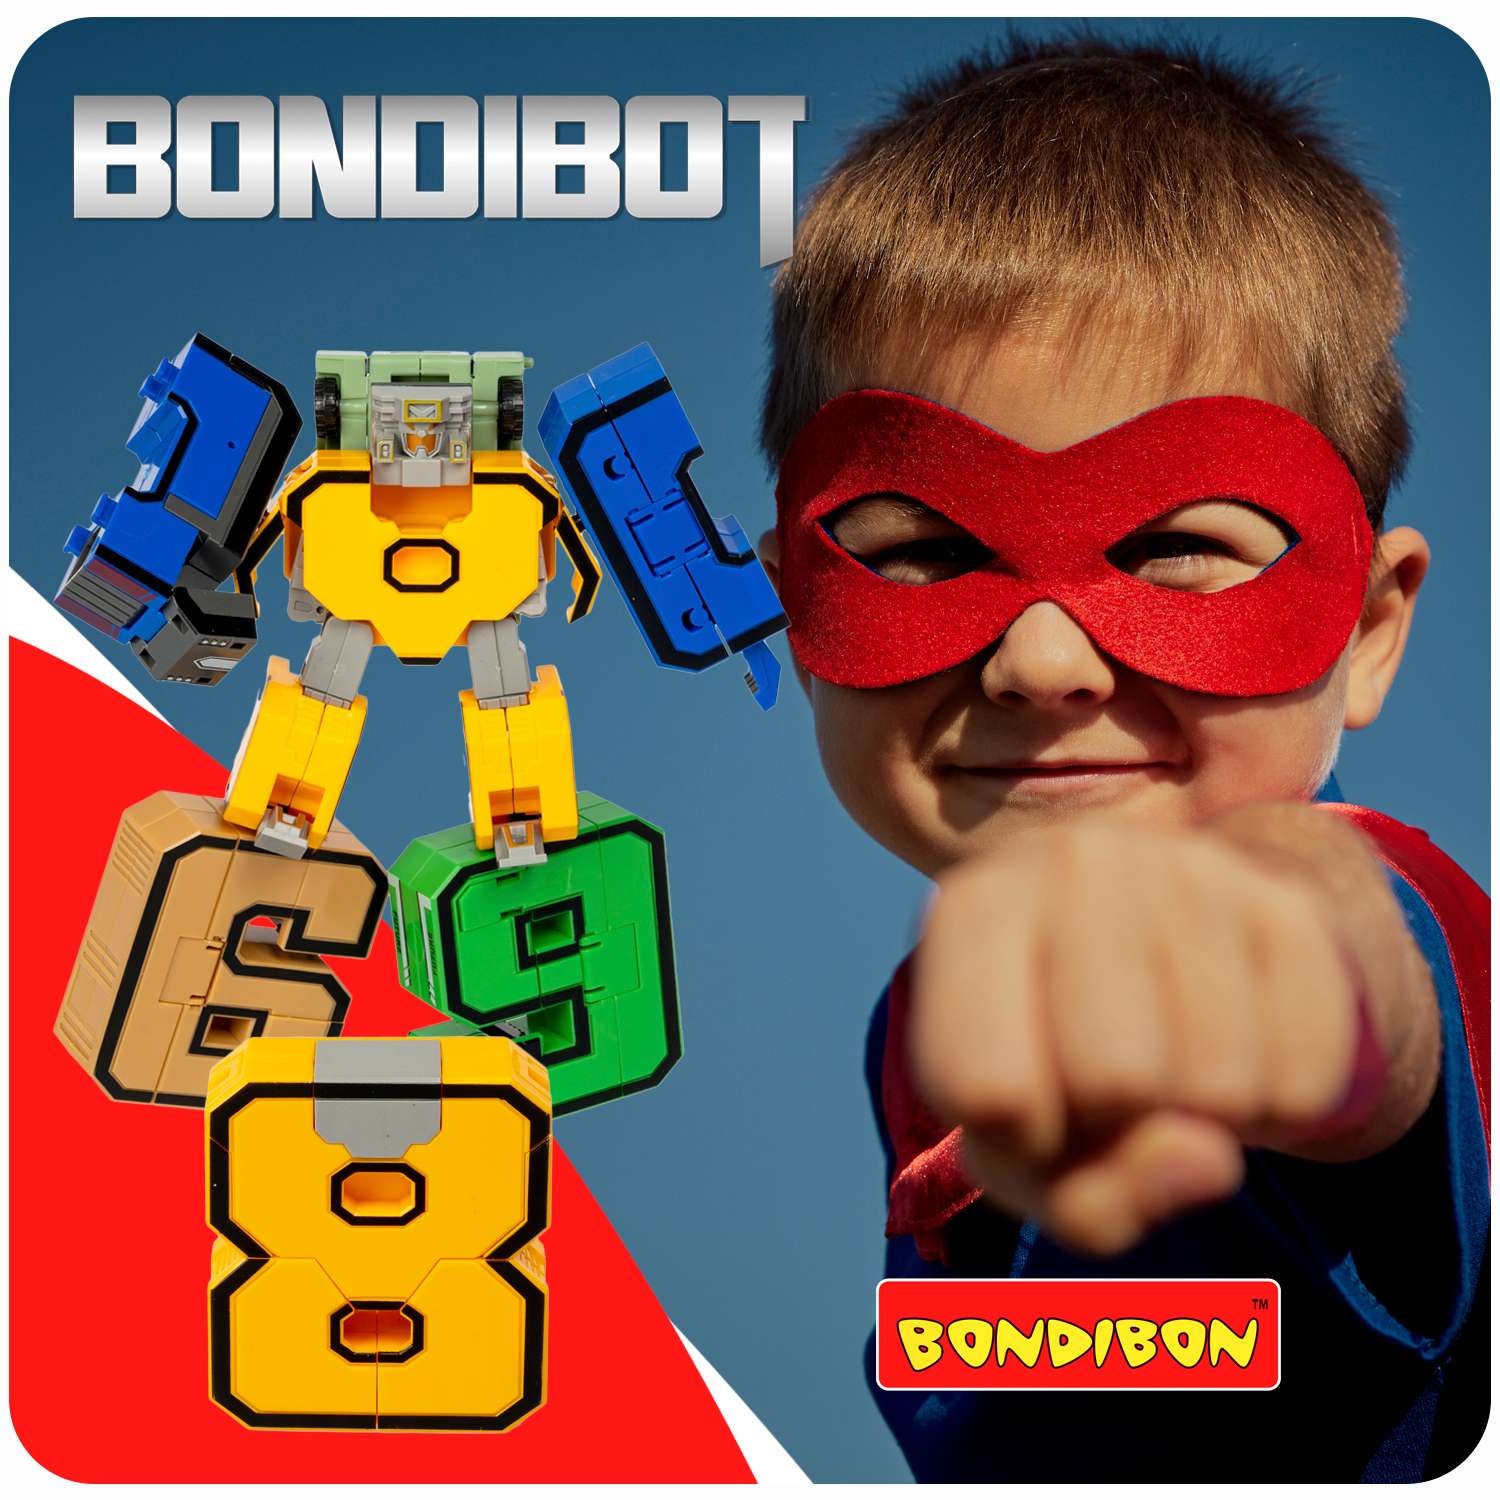 Трансформер BONDIBON bondibot 2 в 1 Цифровой переворот робот-цифра 8 жёлтого цвета в голубом боксе - фото 10